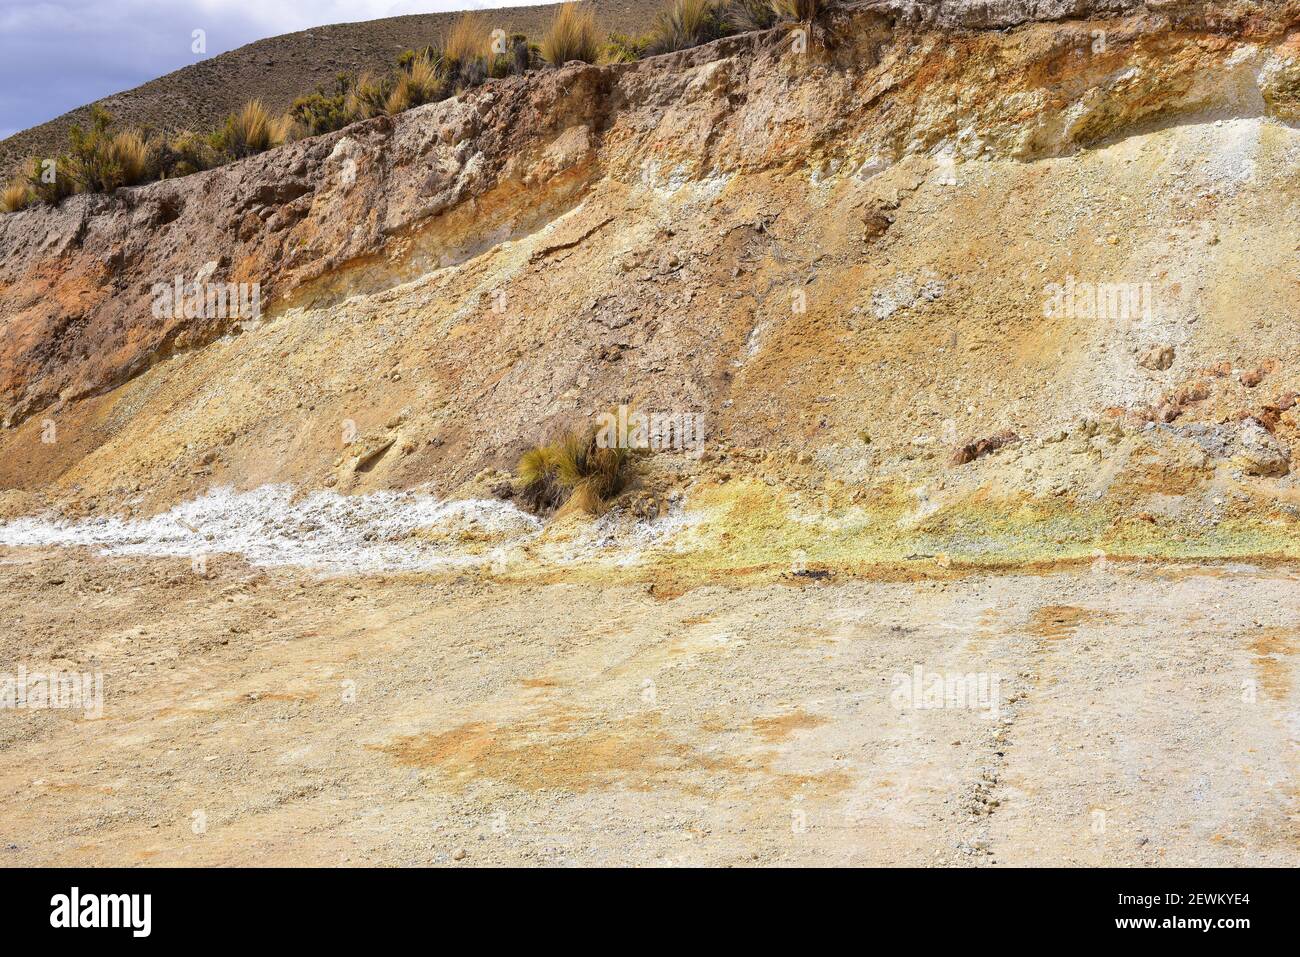 Termas Jurasi (Jurasi hot springs). Sulfur and mineral salts. Putre, Norte Grande de Chile. Stock Photo